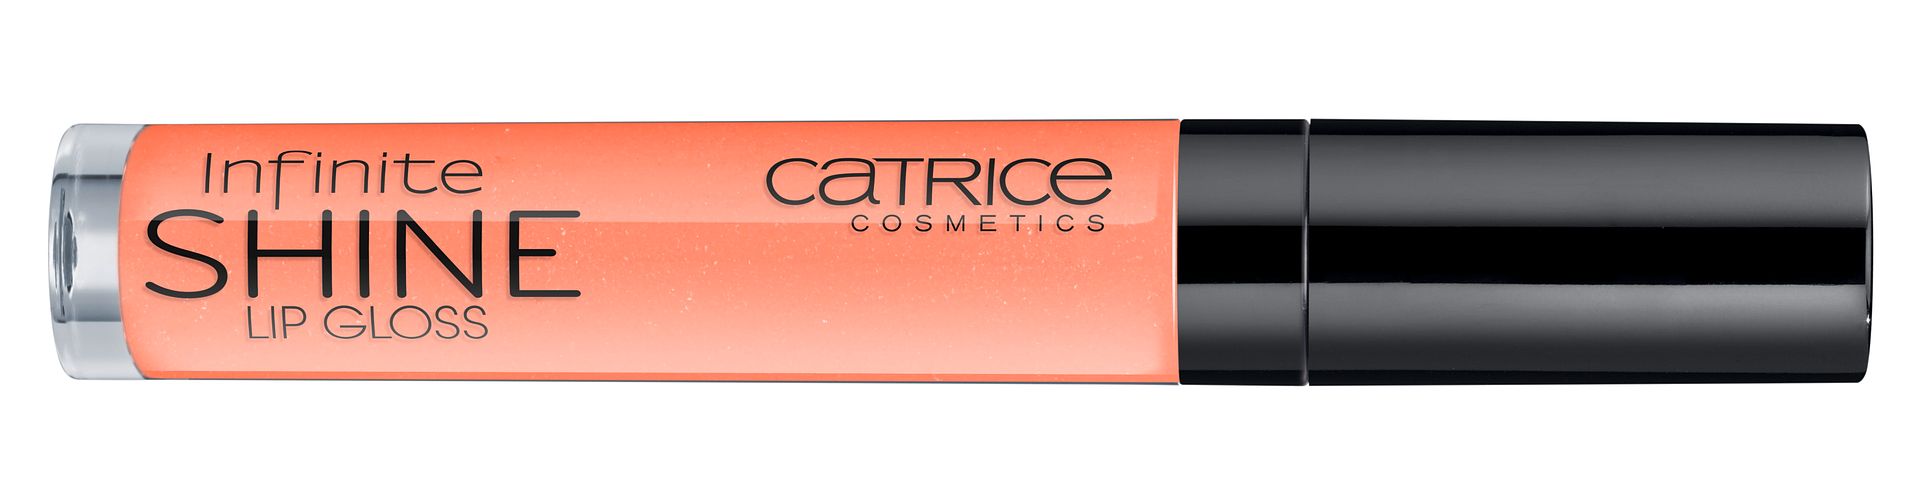 Catrice Infinite Shine Lip Gloss